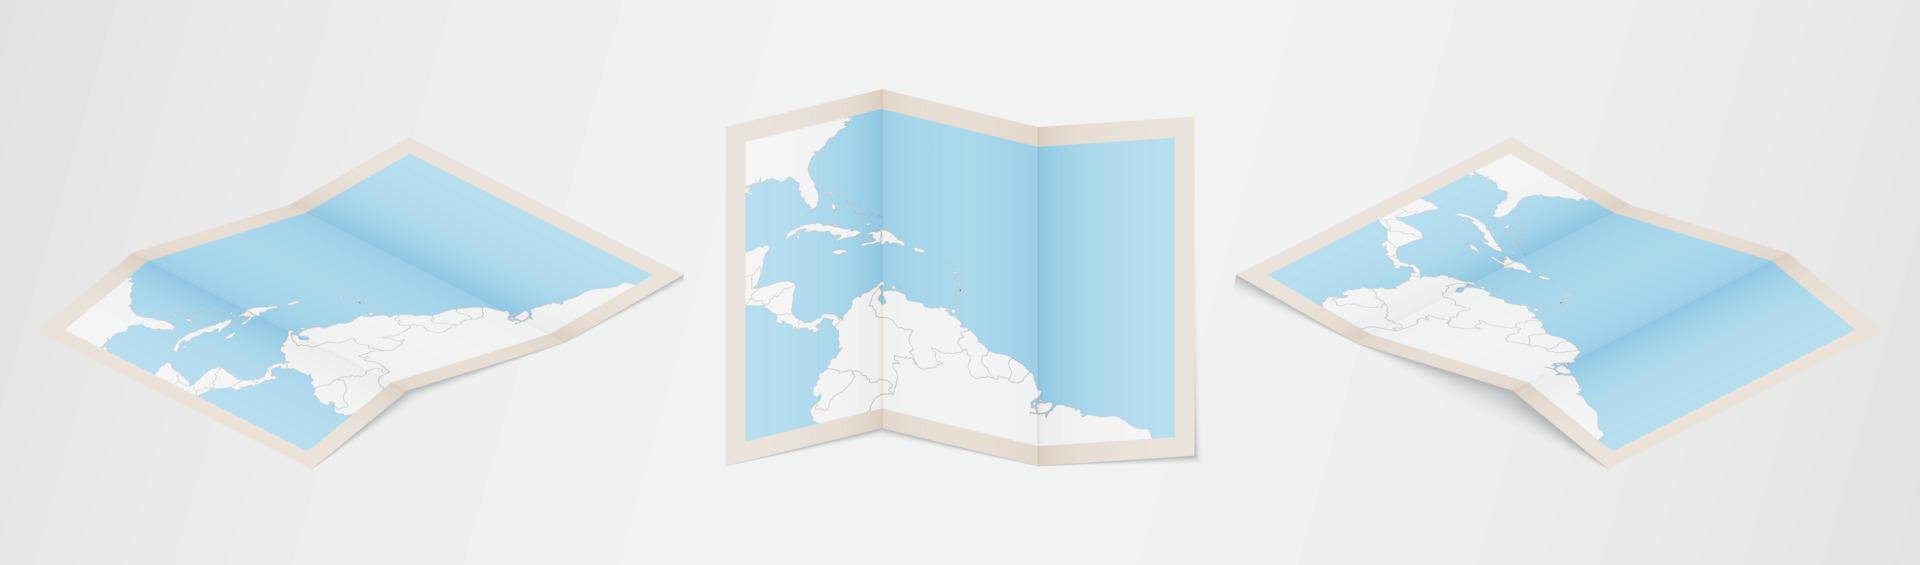 Faltkarte von St. Lucia in drei verschiedenen Versionen. vektor